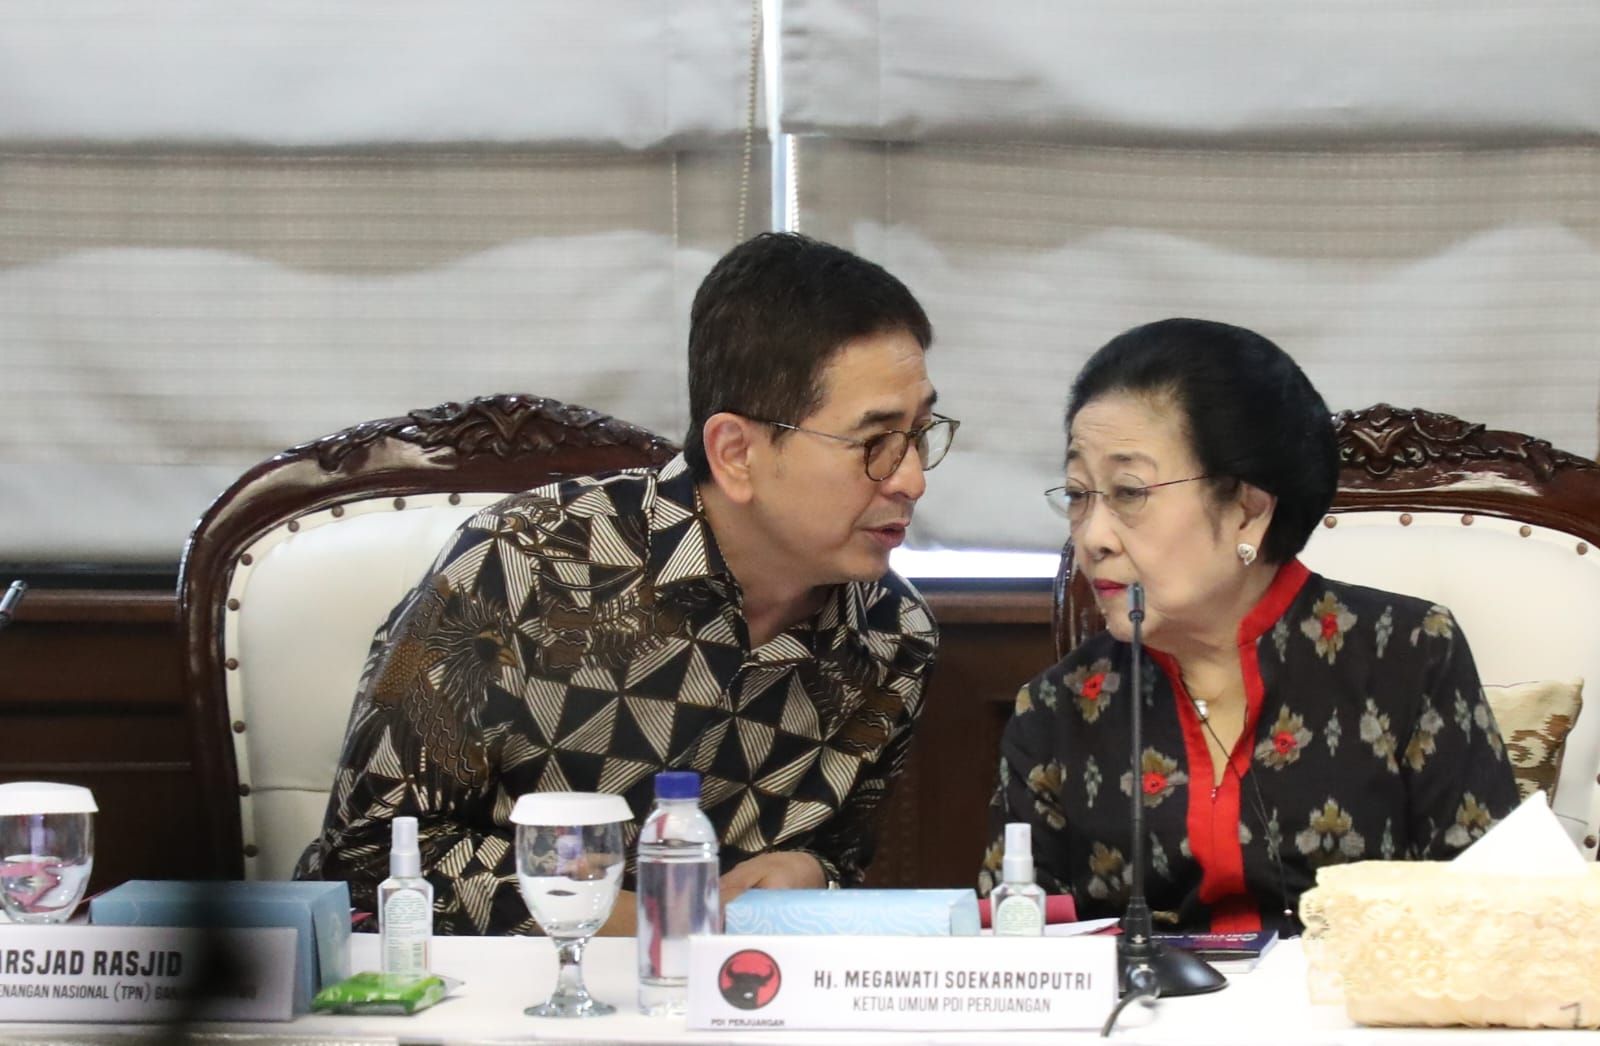 Jadi Ketua TPN, Arsjad Rasjid Duduk Sebelahan dengan Megawati di Rapat Pemenangan Ganjar